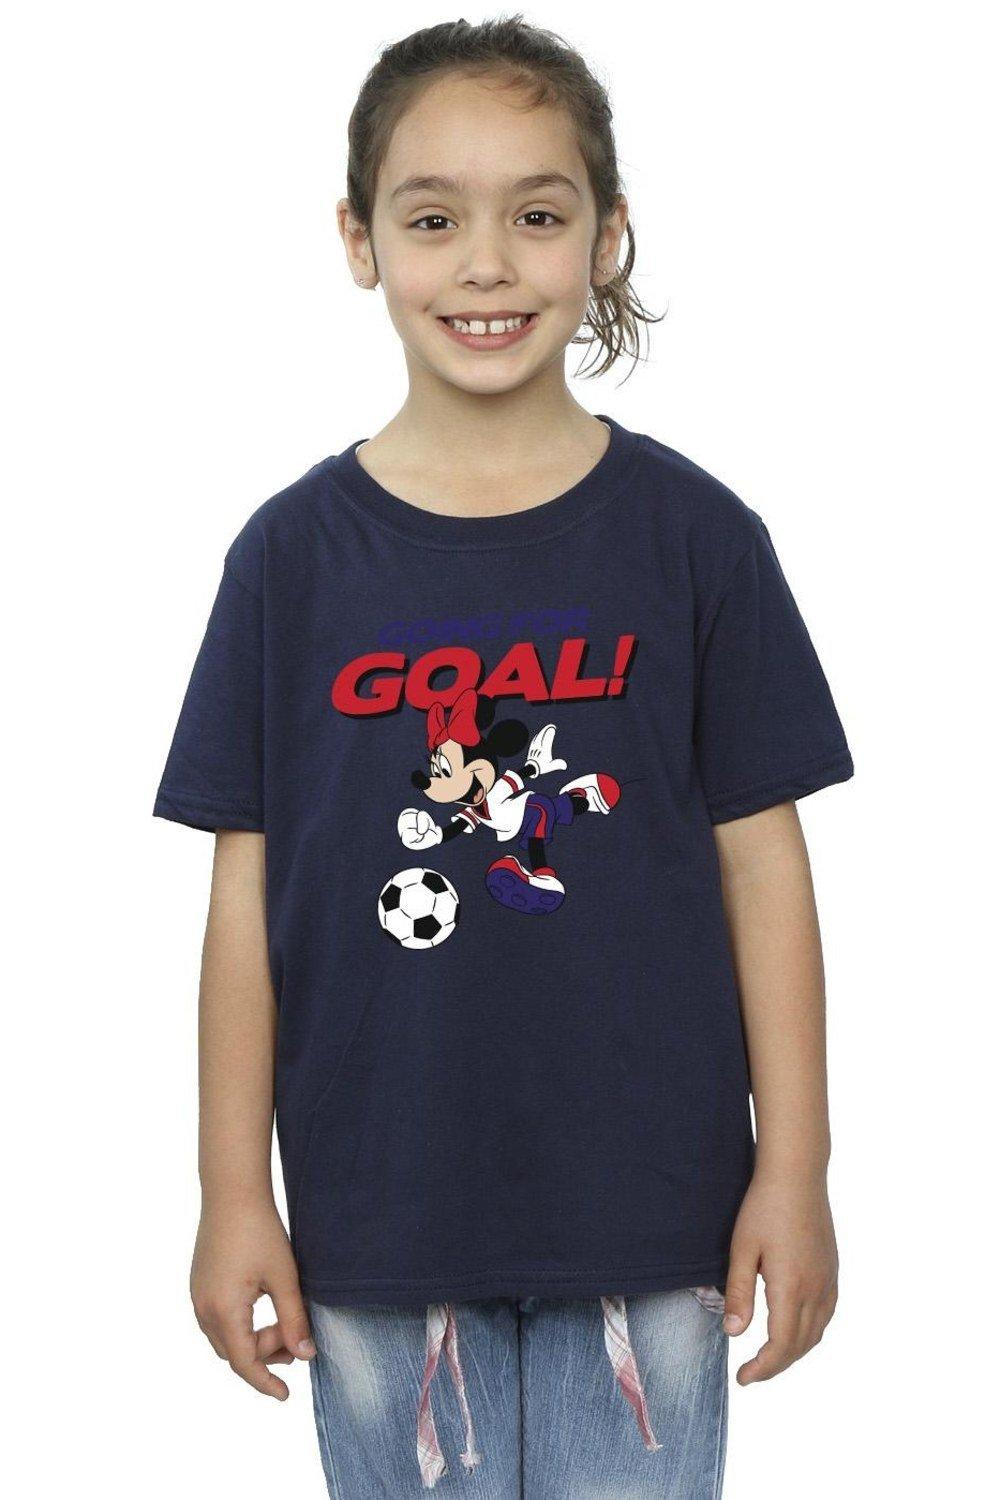 Хлопковая футболка «Минни Маус идет к цели» Disney, темно-синий